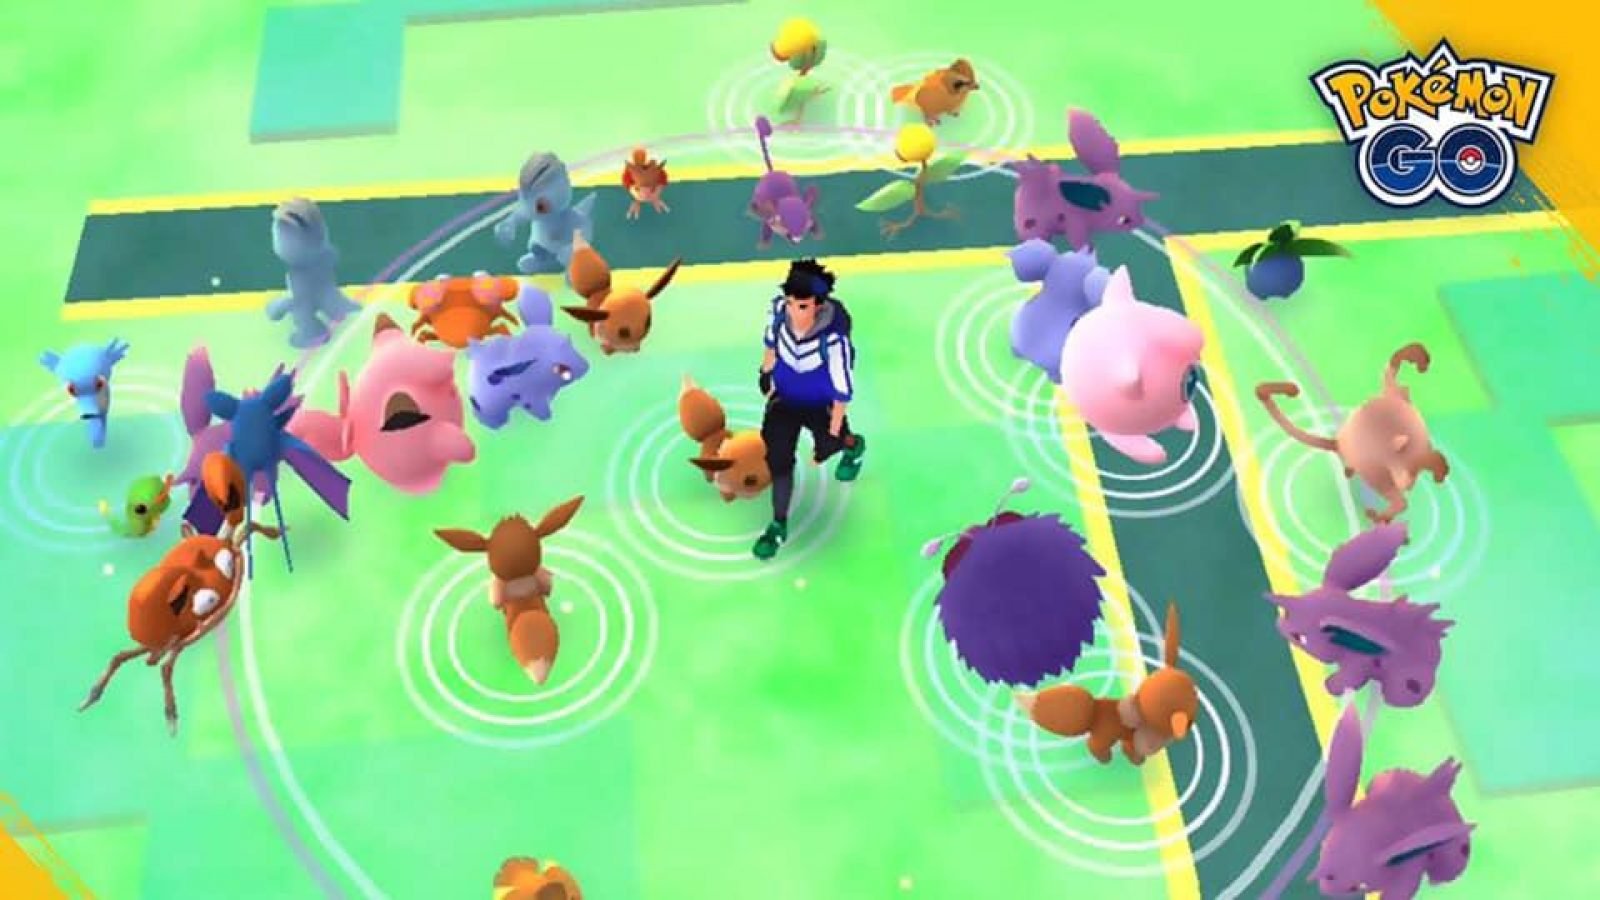 Pokémon GO: Descobertas muda ovos e tem mais novidades, veja